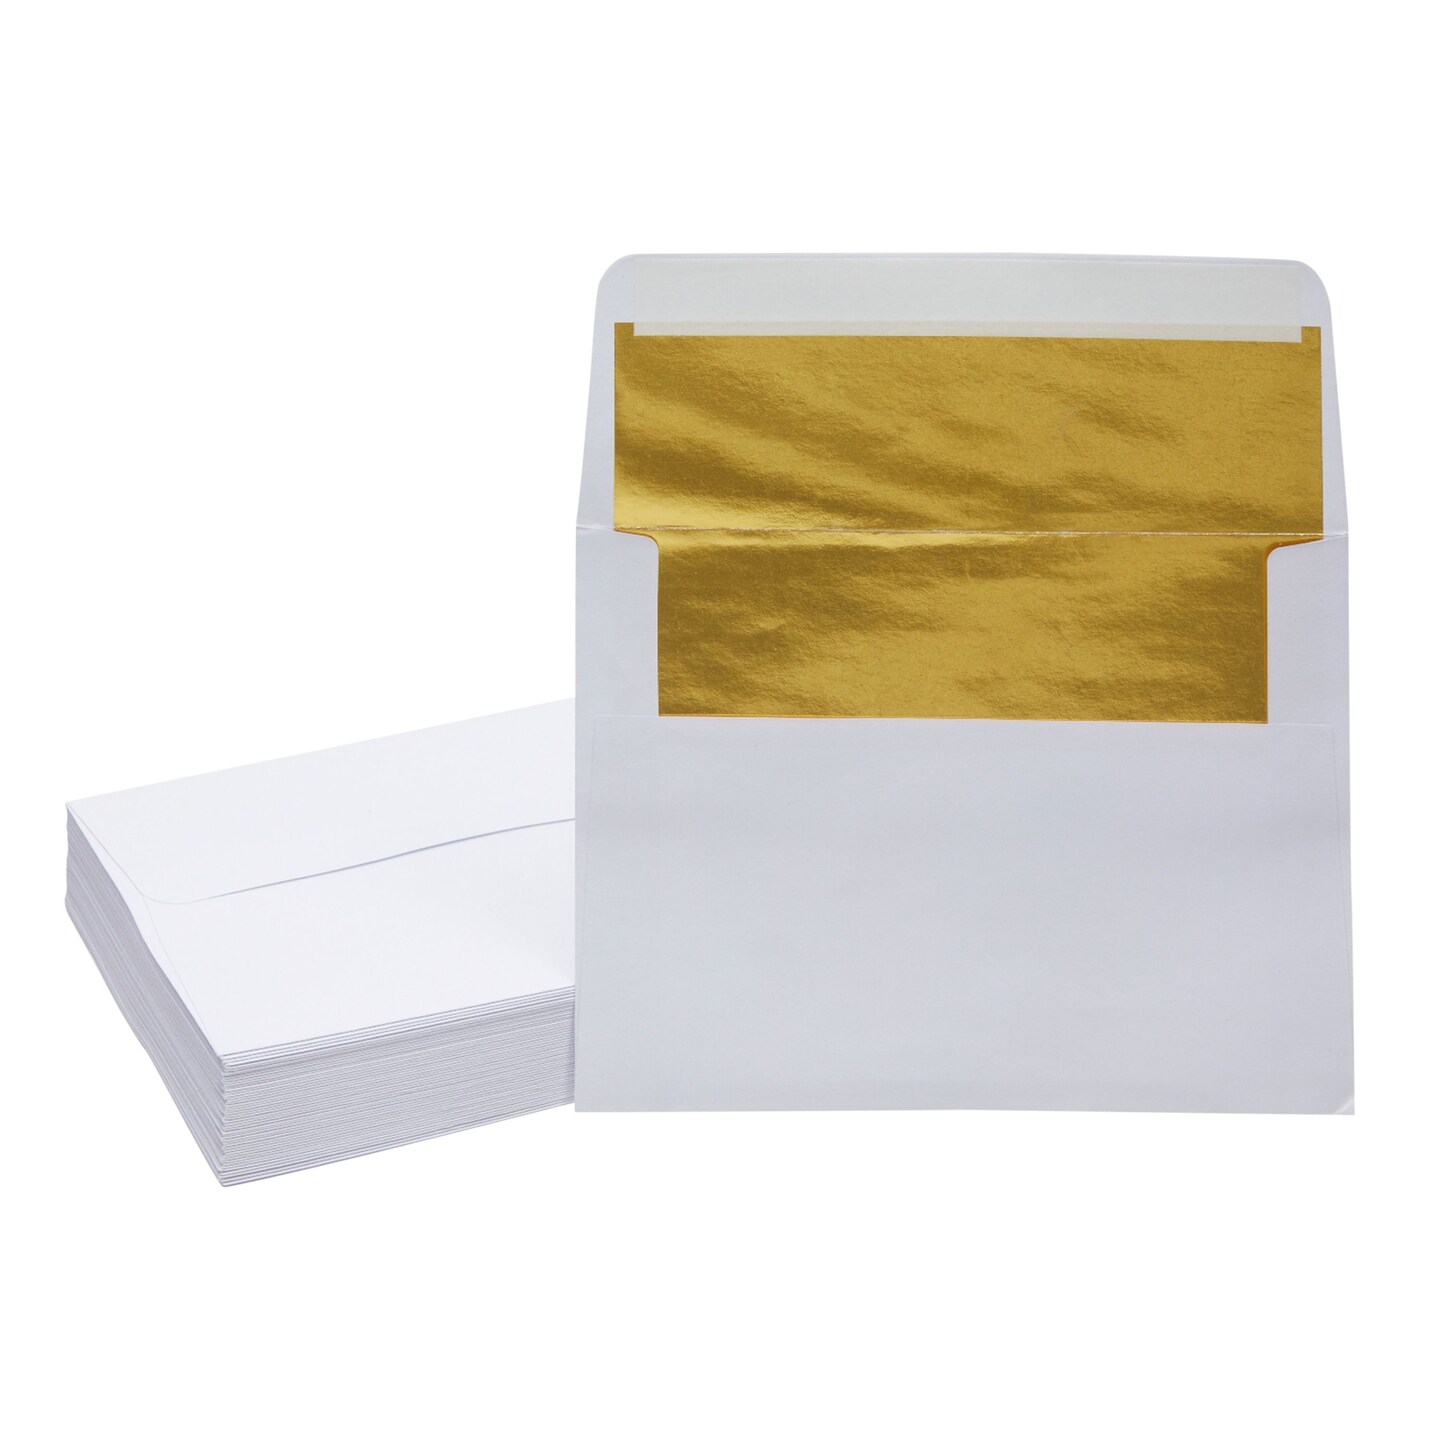 A7 White Envelopes, 5x7 Envelopes for Invitations 